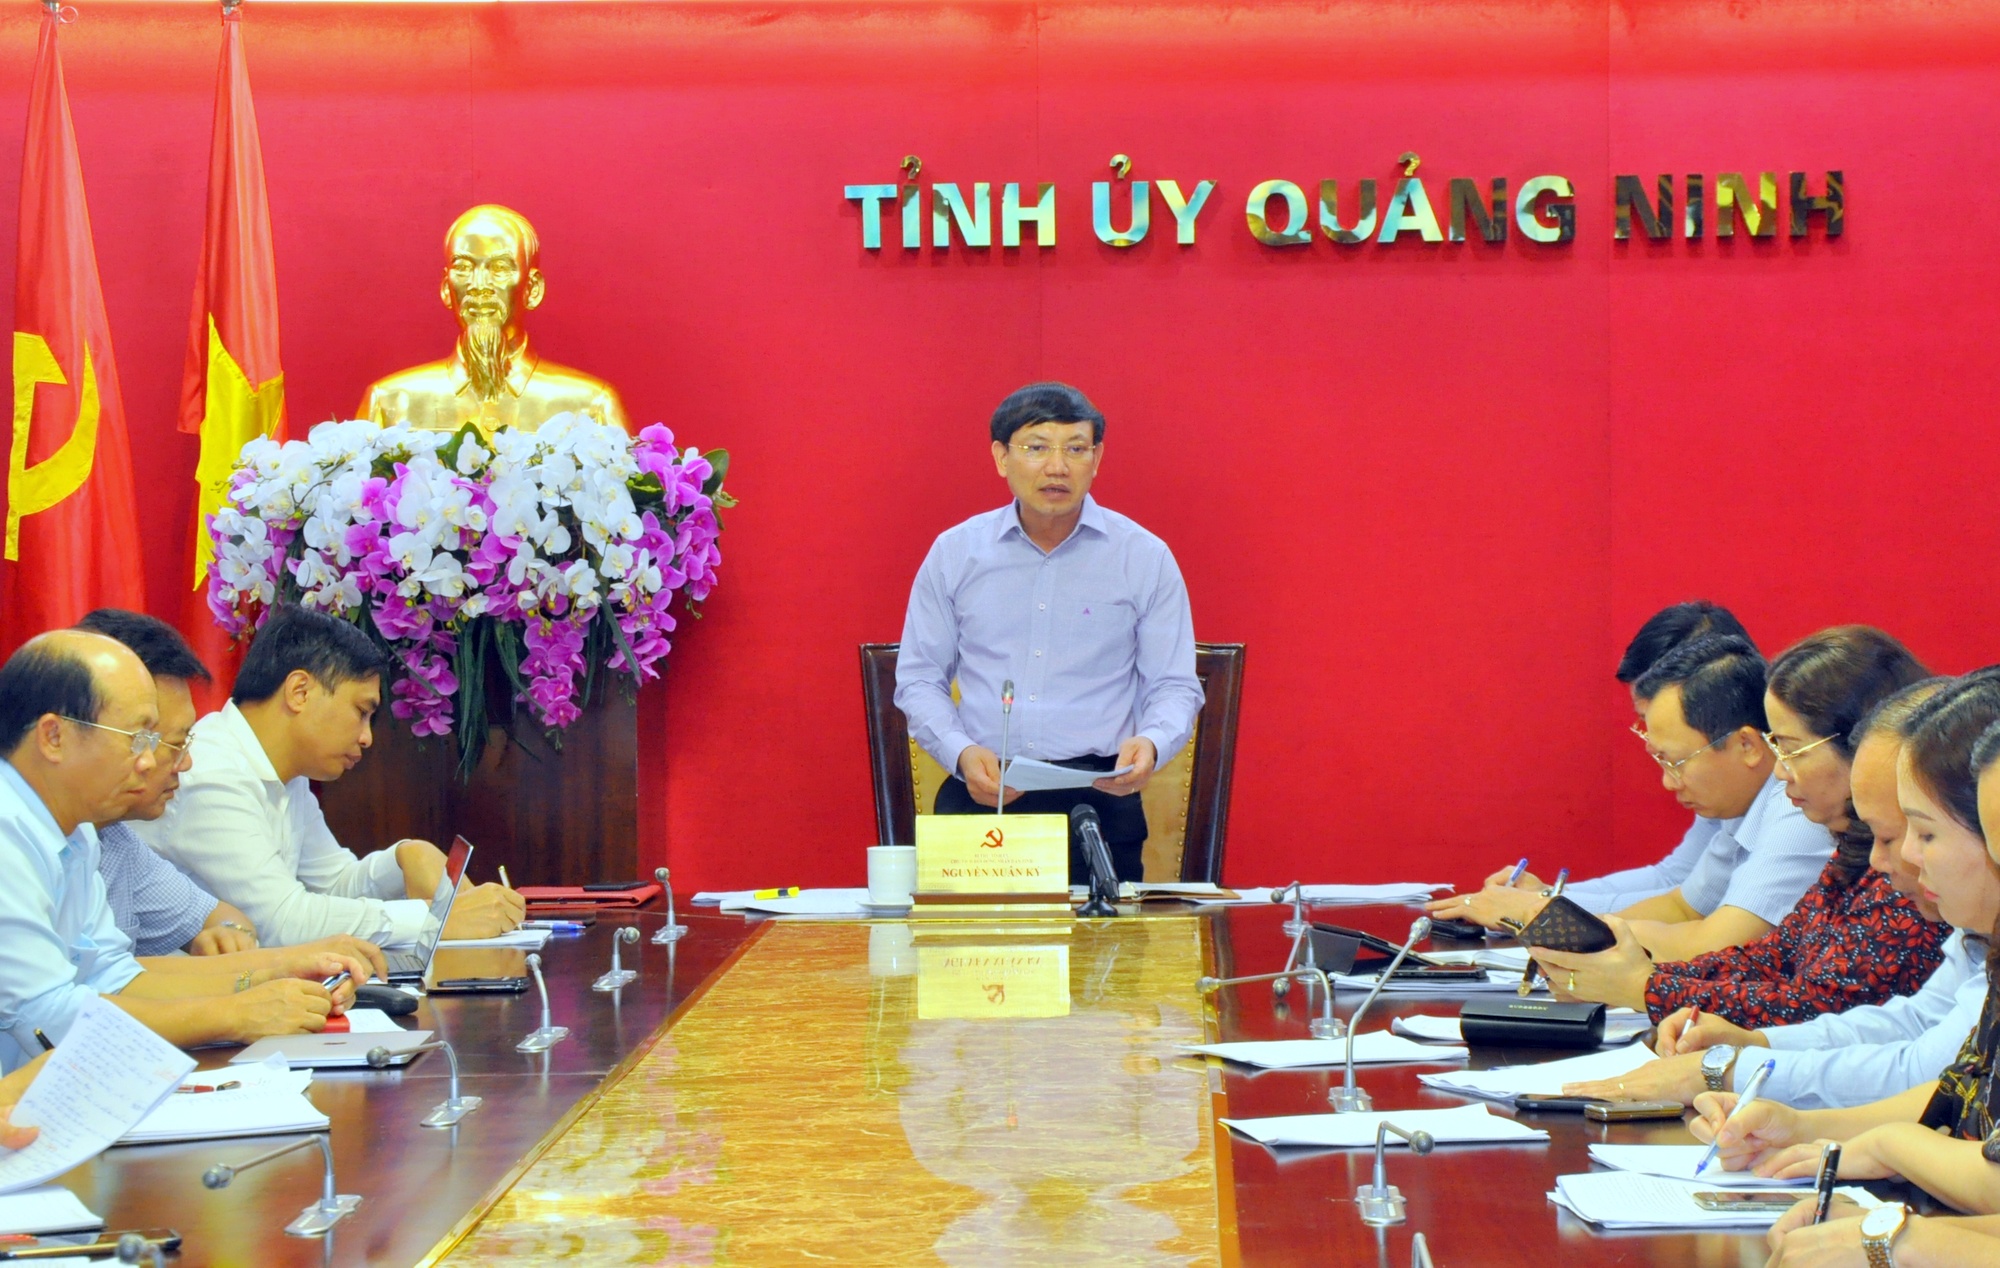 Đồng chí Nguyễn Xuân Ký, Bí thư Tỉnh ủy, Chủ tịch HĐND tỉnh phát biểu kết luận cuộc họp.